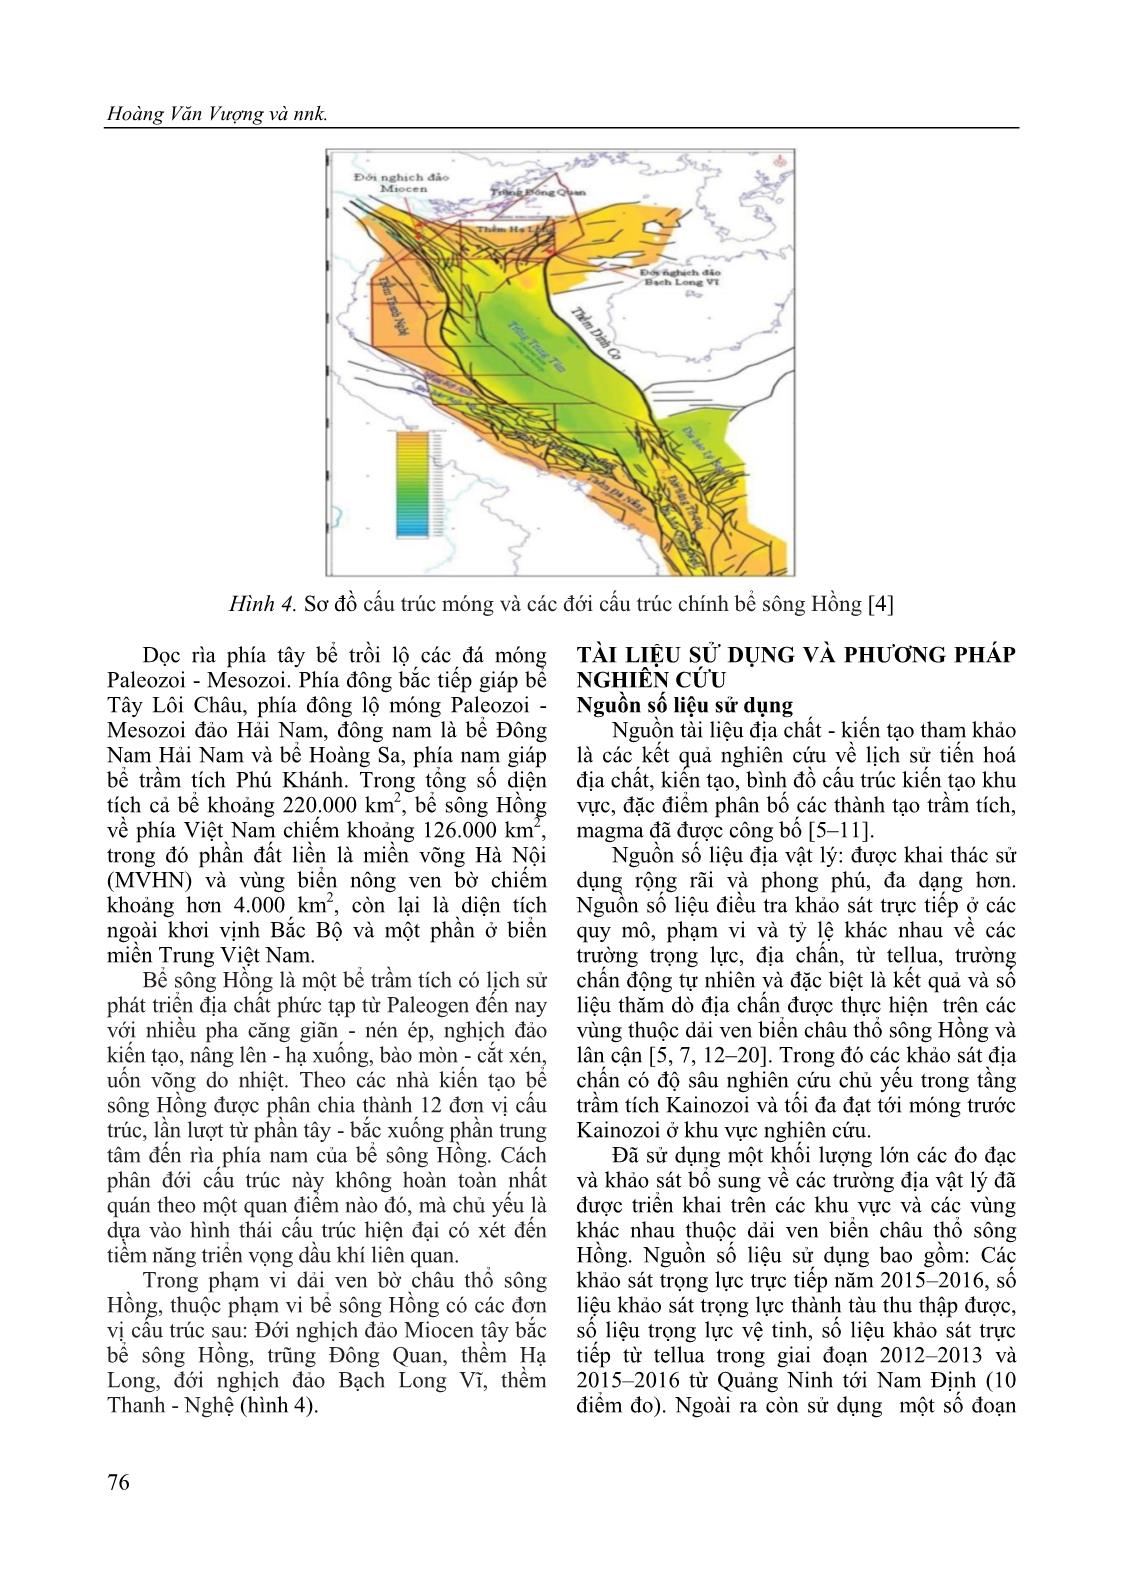 Nghiên cứu cấu trúc địa chất sâu và dự báo một số khu vực có triển vọng dầu khí thuộc dải ven biển châu thổ sông Hồng theo tài liệu địa vật lý trang 6